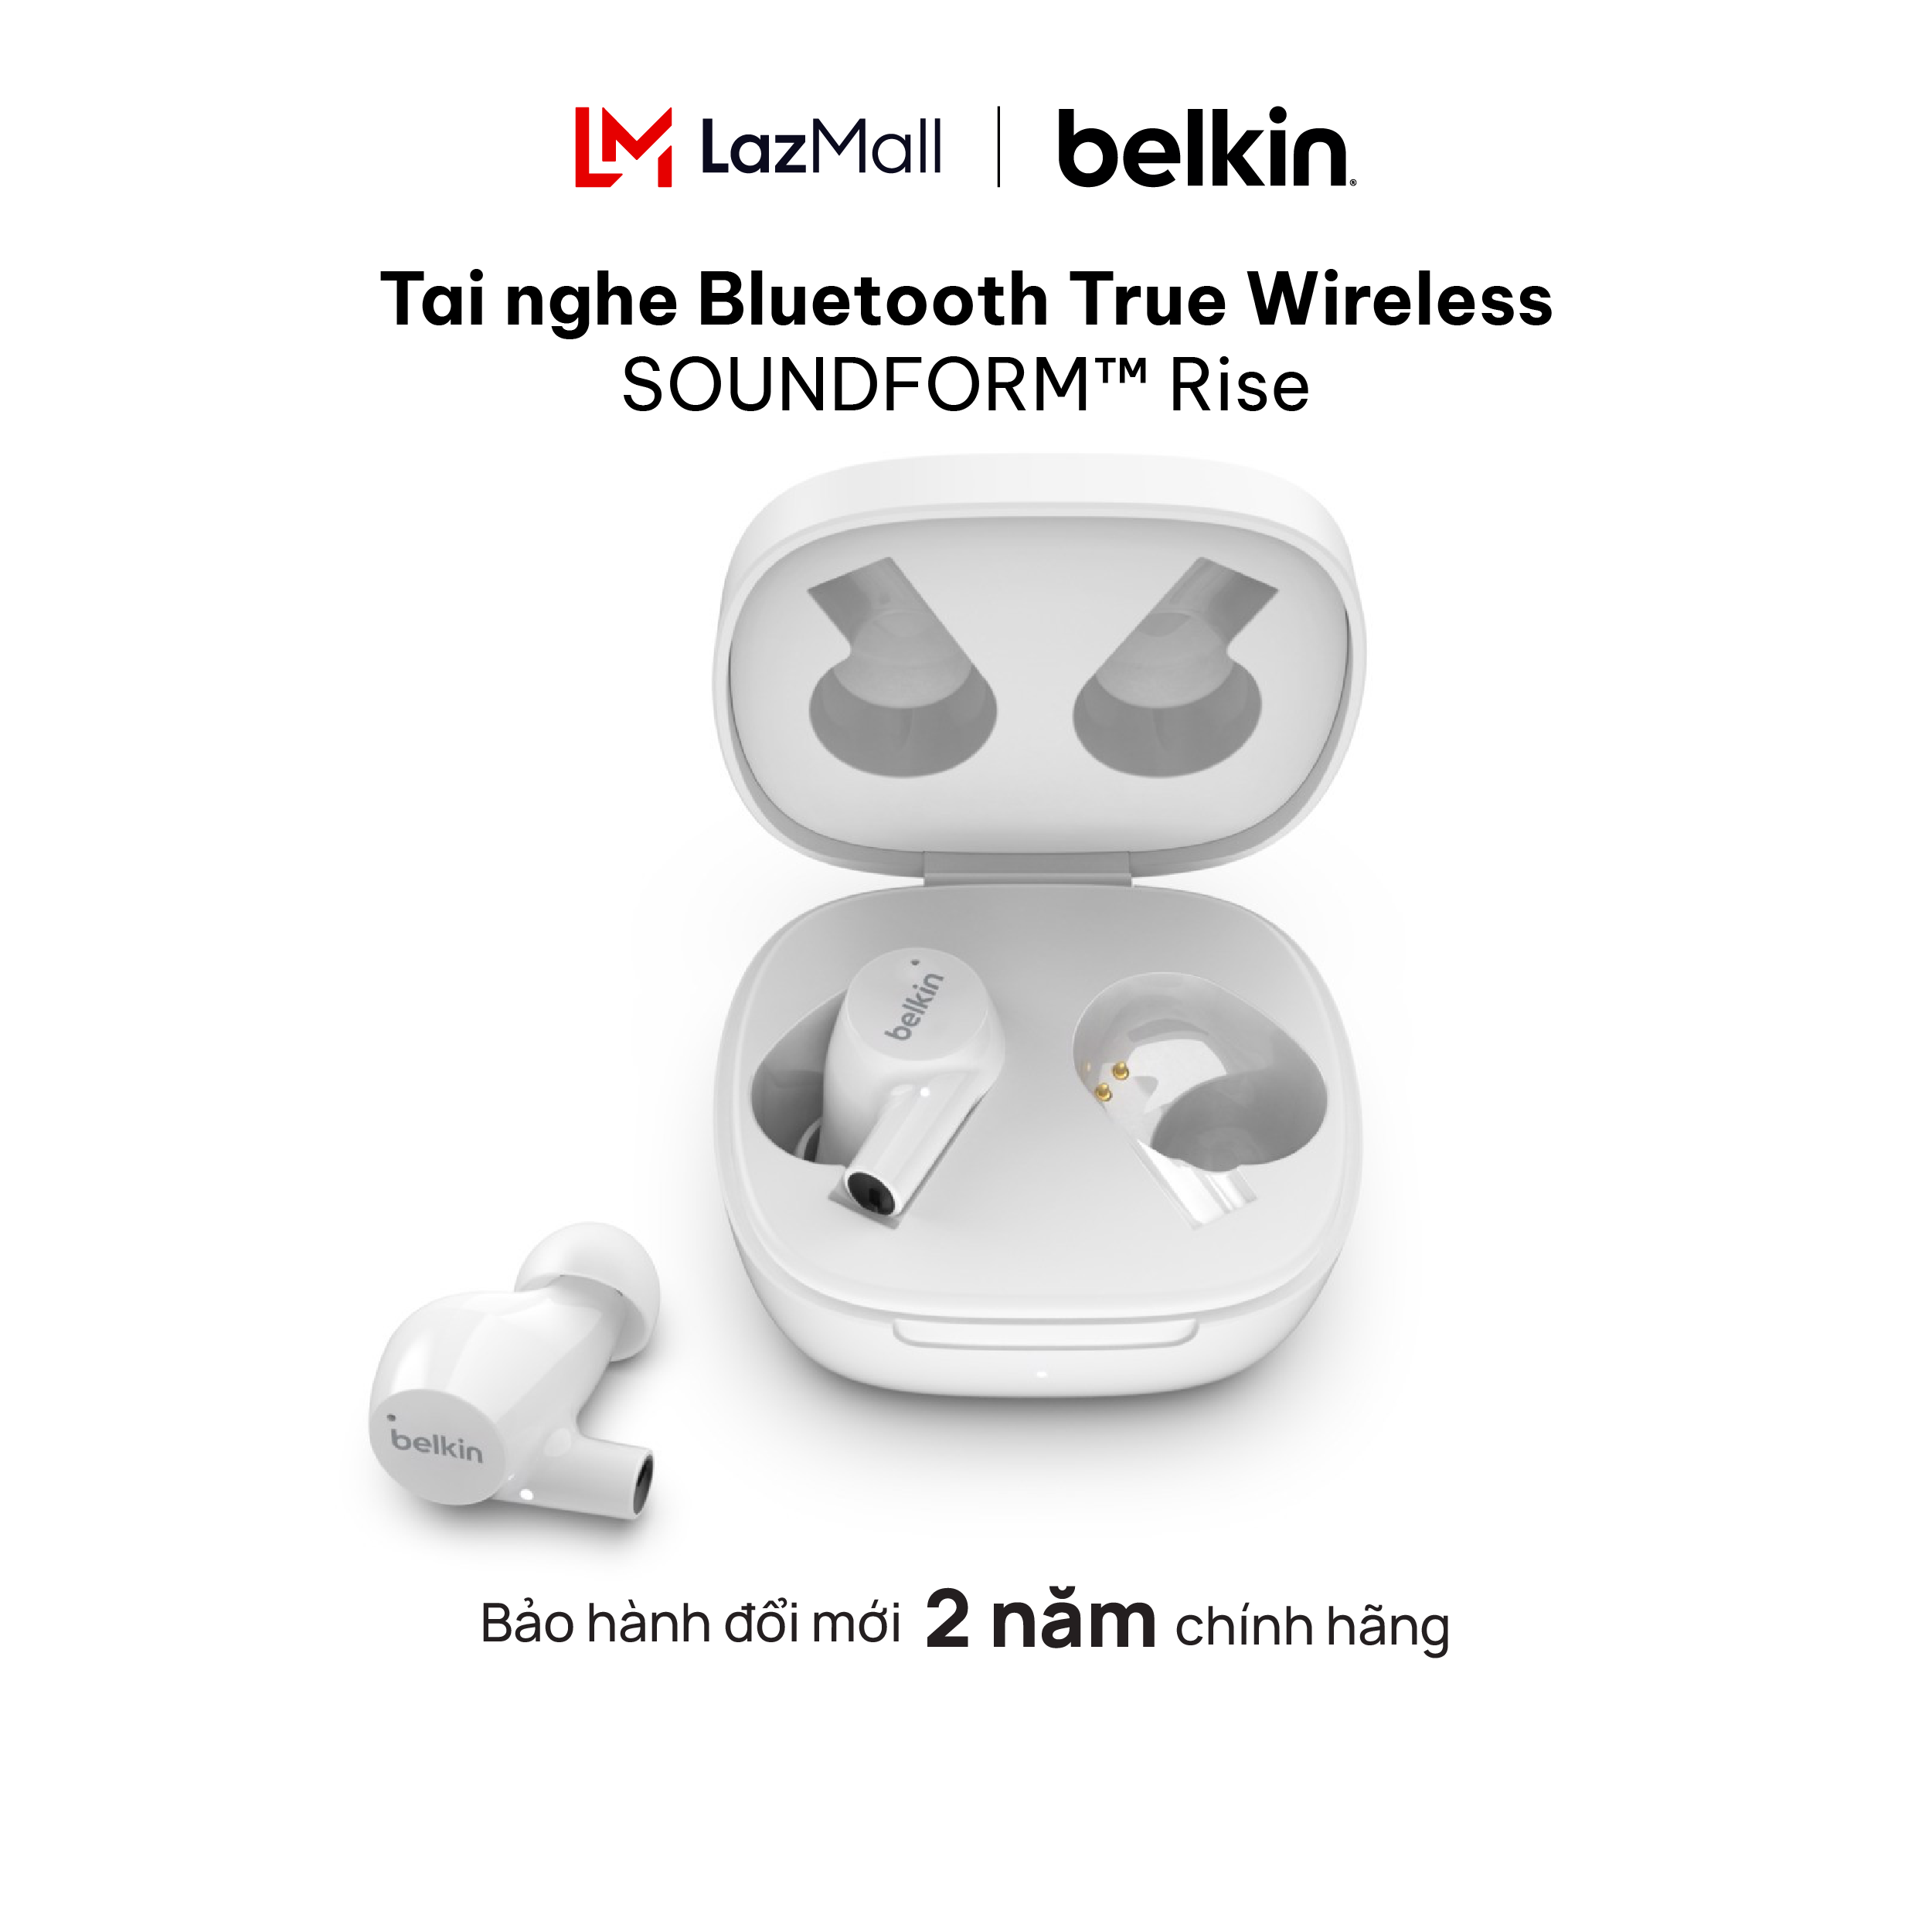 Tai nghe Bluetooth True Wireless SOUNDFORMTM Rise Belkin - Hàng chính hãng